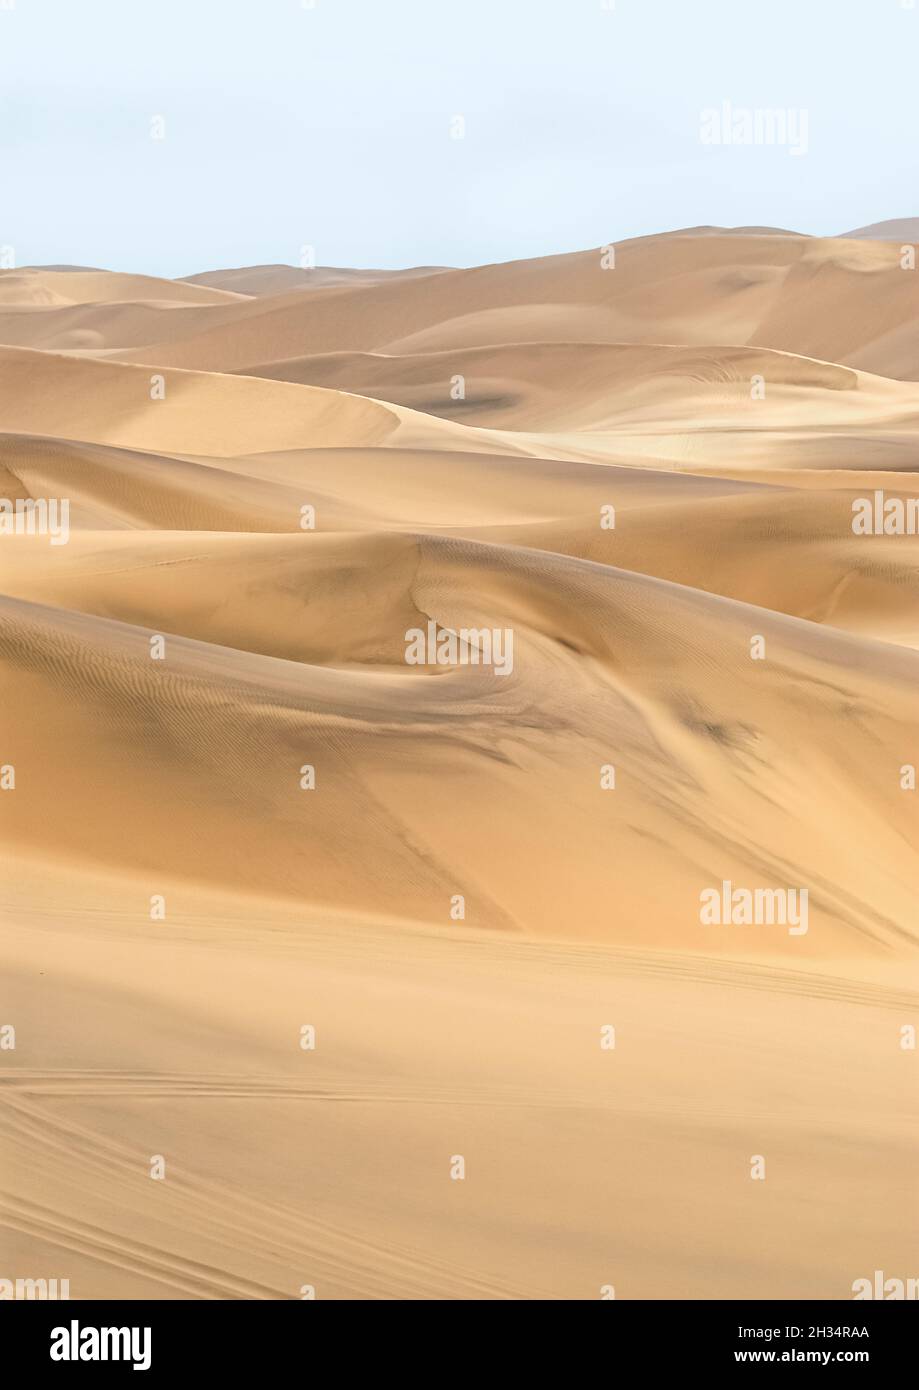 Desert Landscape at the Namib Desert, Namibia Stock Photo